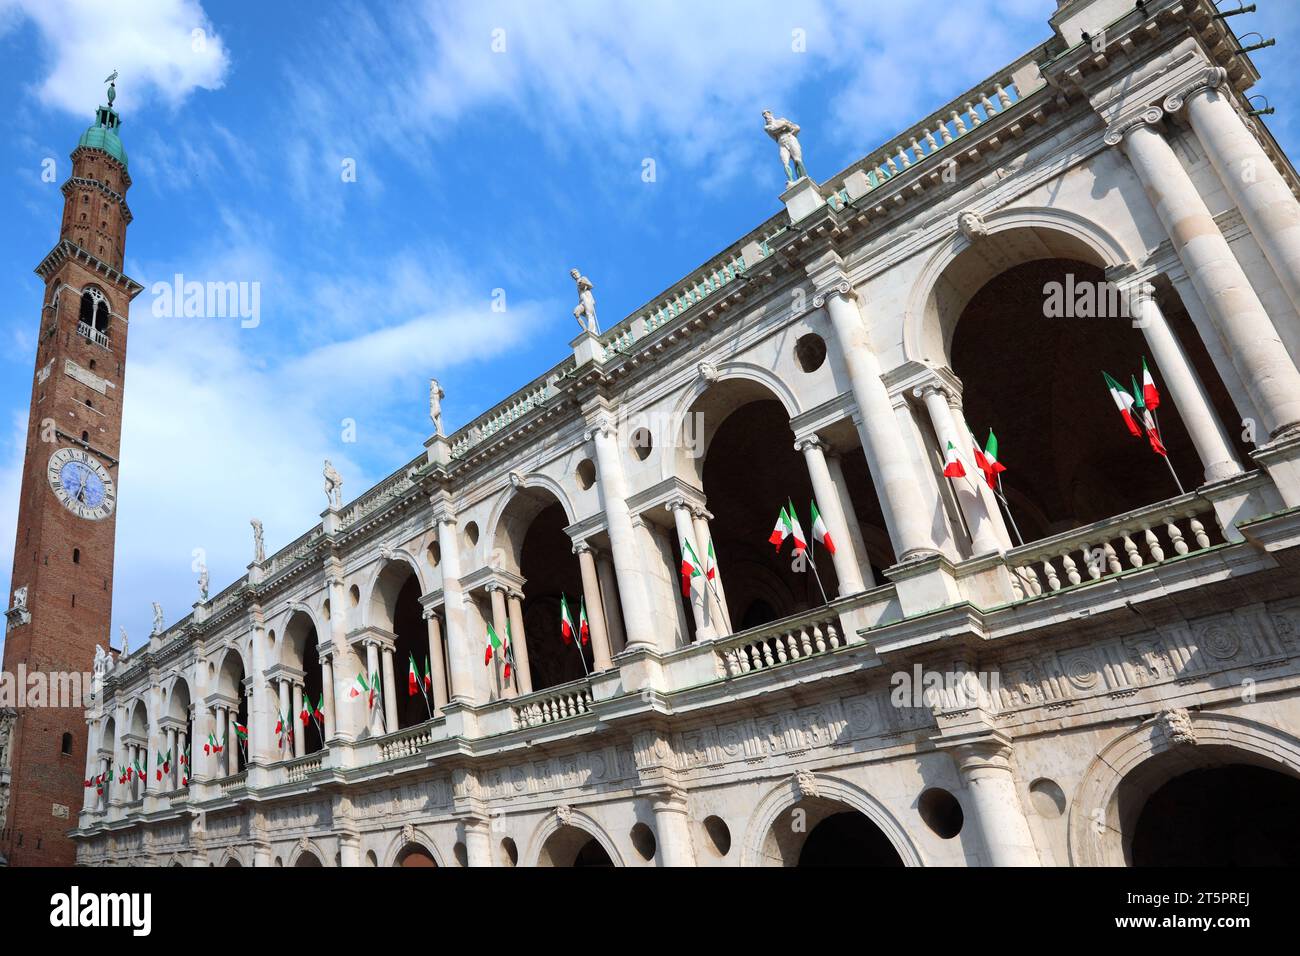 Vicenza, vi, Italia - 1° giugno 2020: La Basilica Palladiana è un edificio rinascimentale nella piazza principale chiamata Piazza dei signori e la torre civica TORRE B. Foto Stock